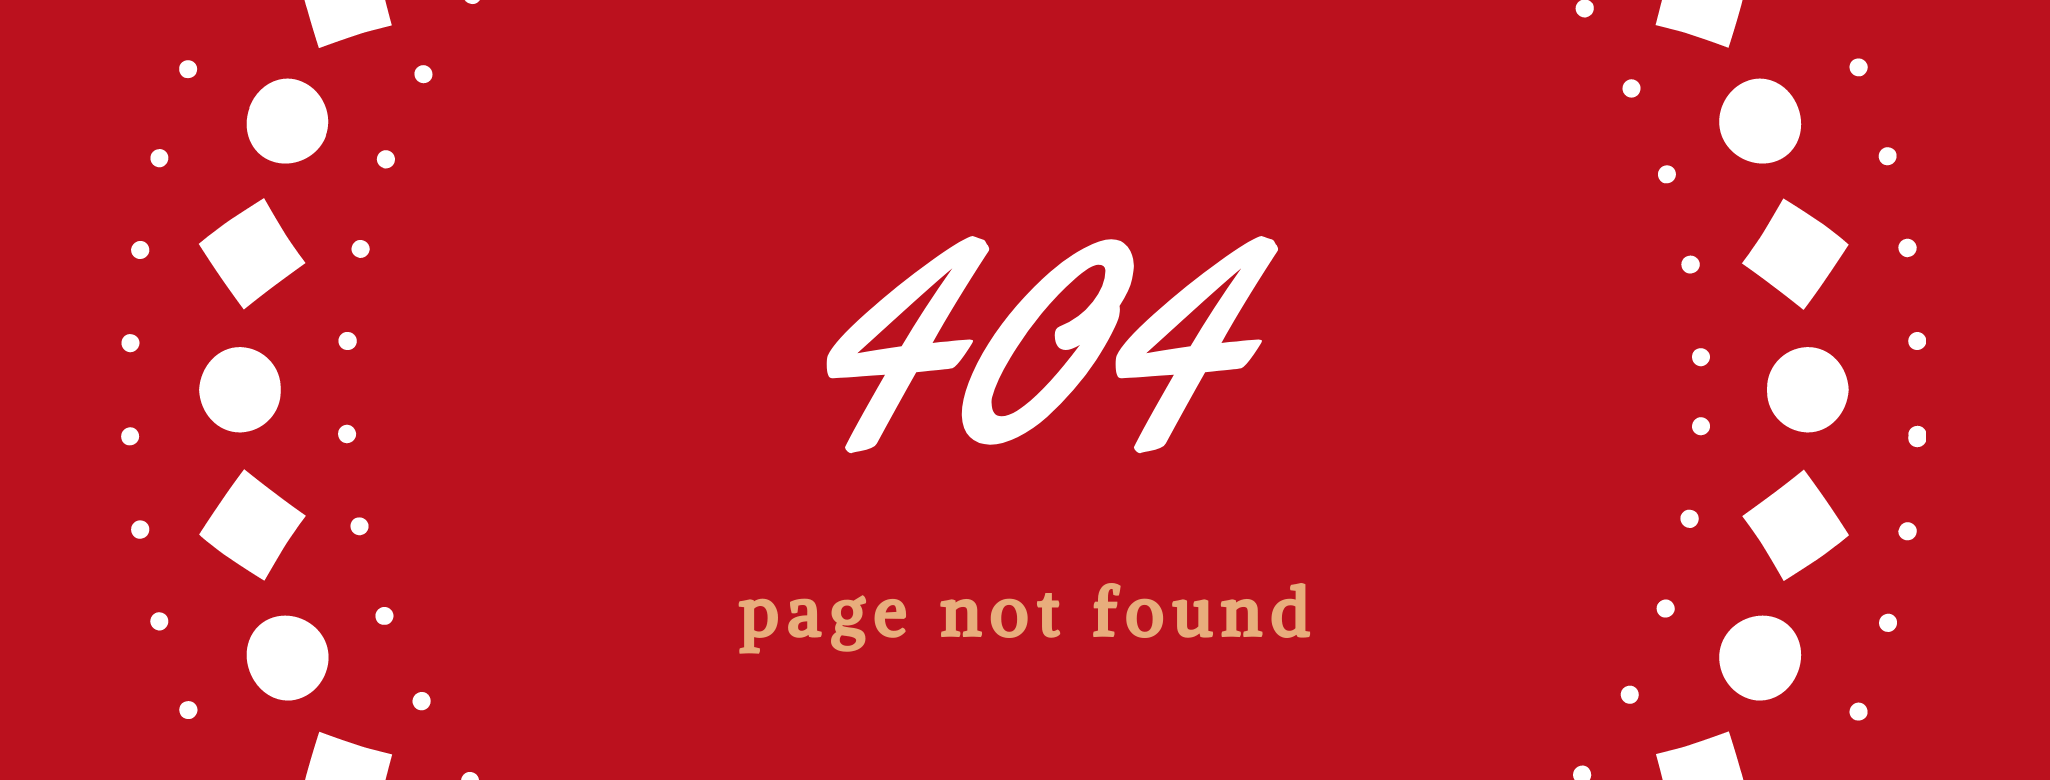 TOP 10 kreativních zpracování stránek 404 na českém internetu